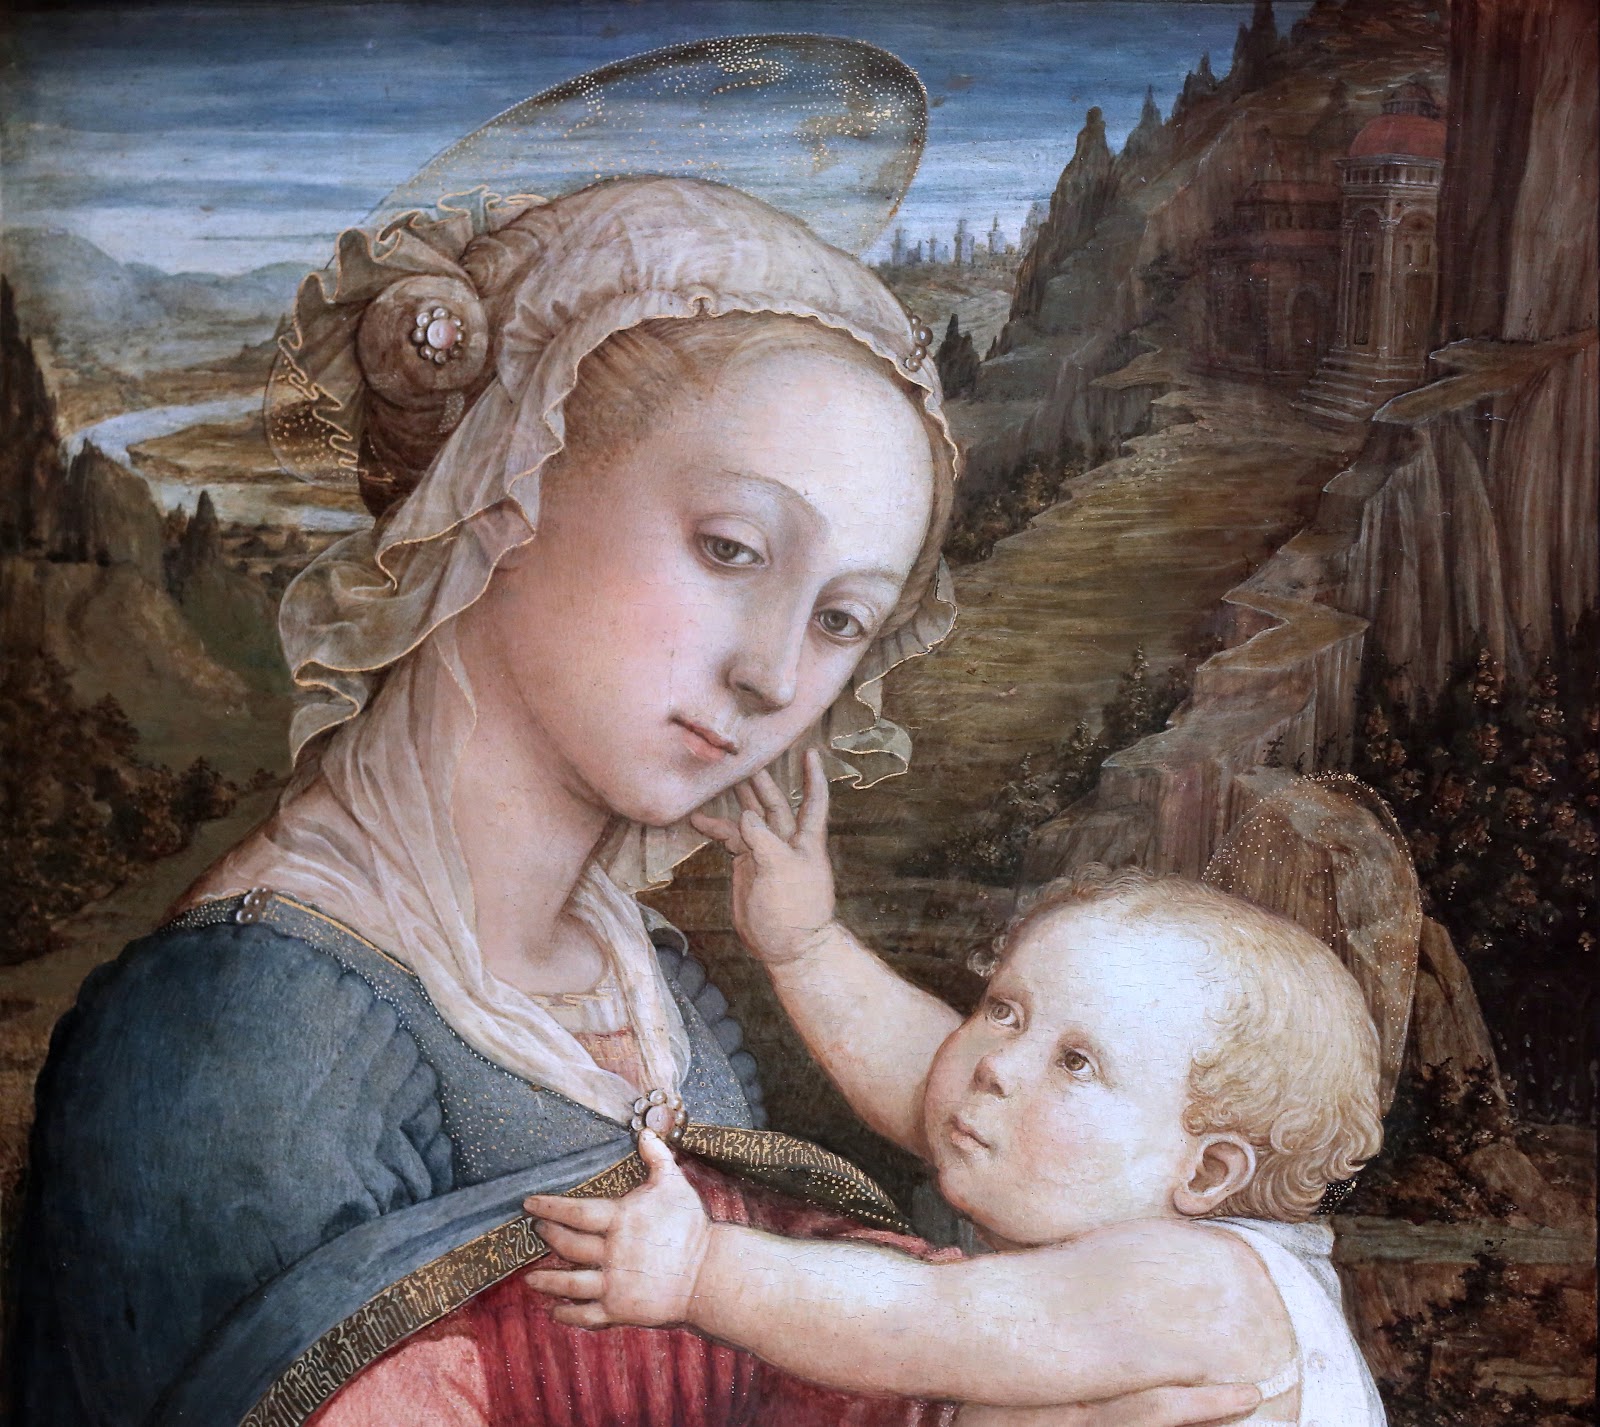 Filippino+Lippi-1457-1504 (147).jpg